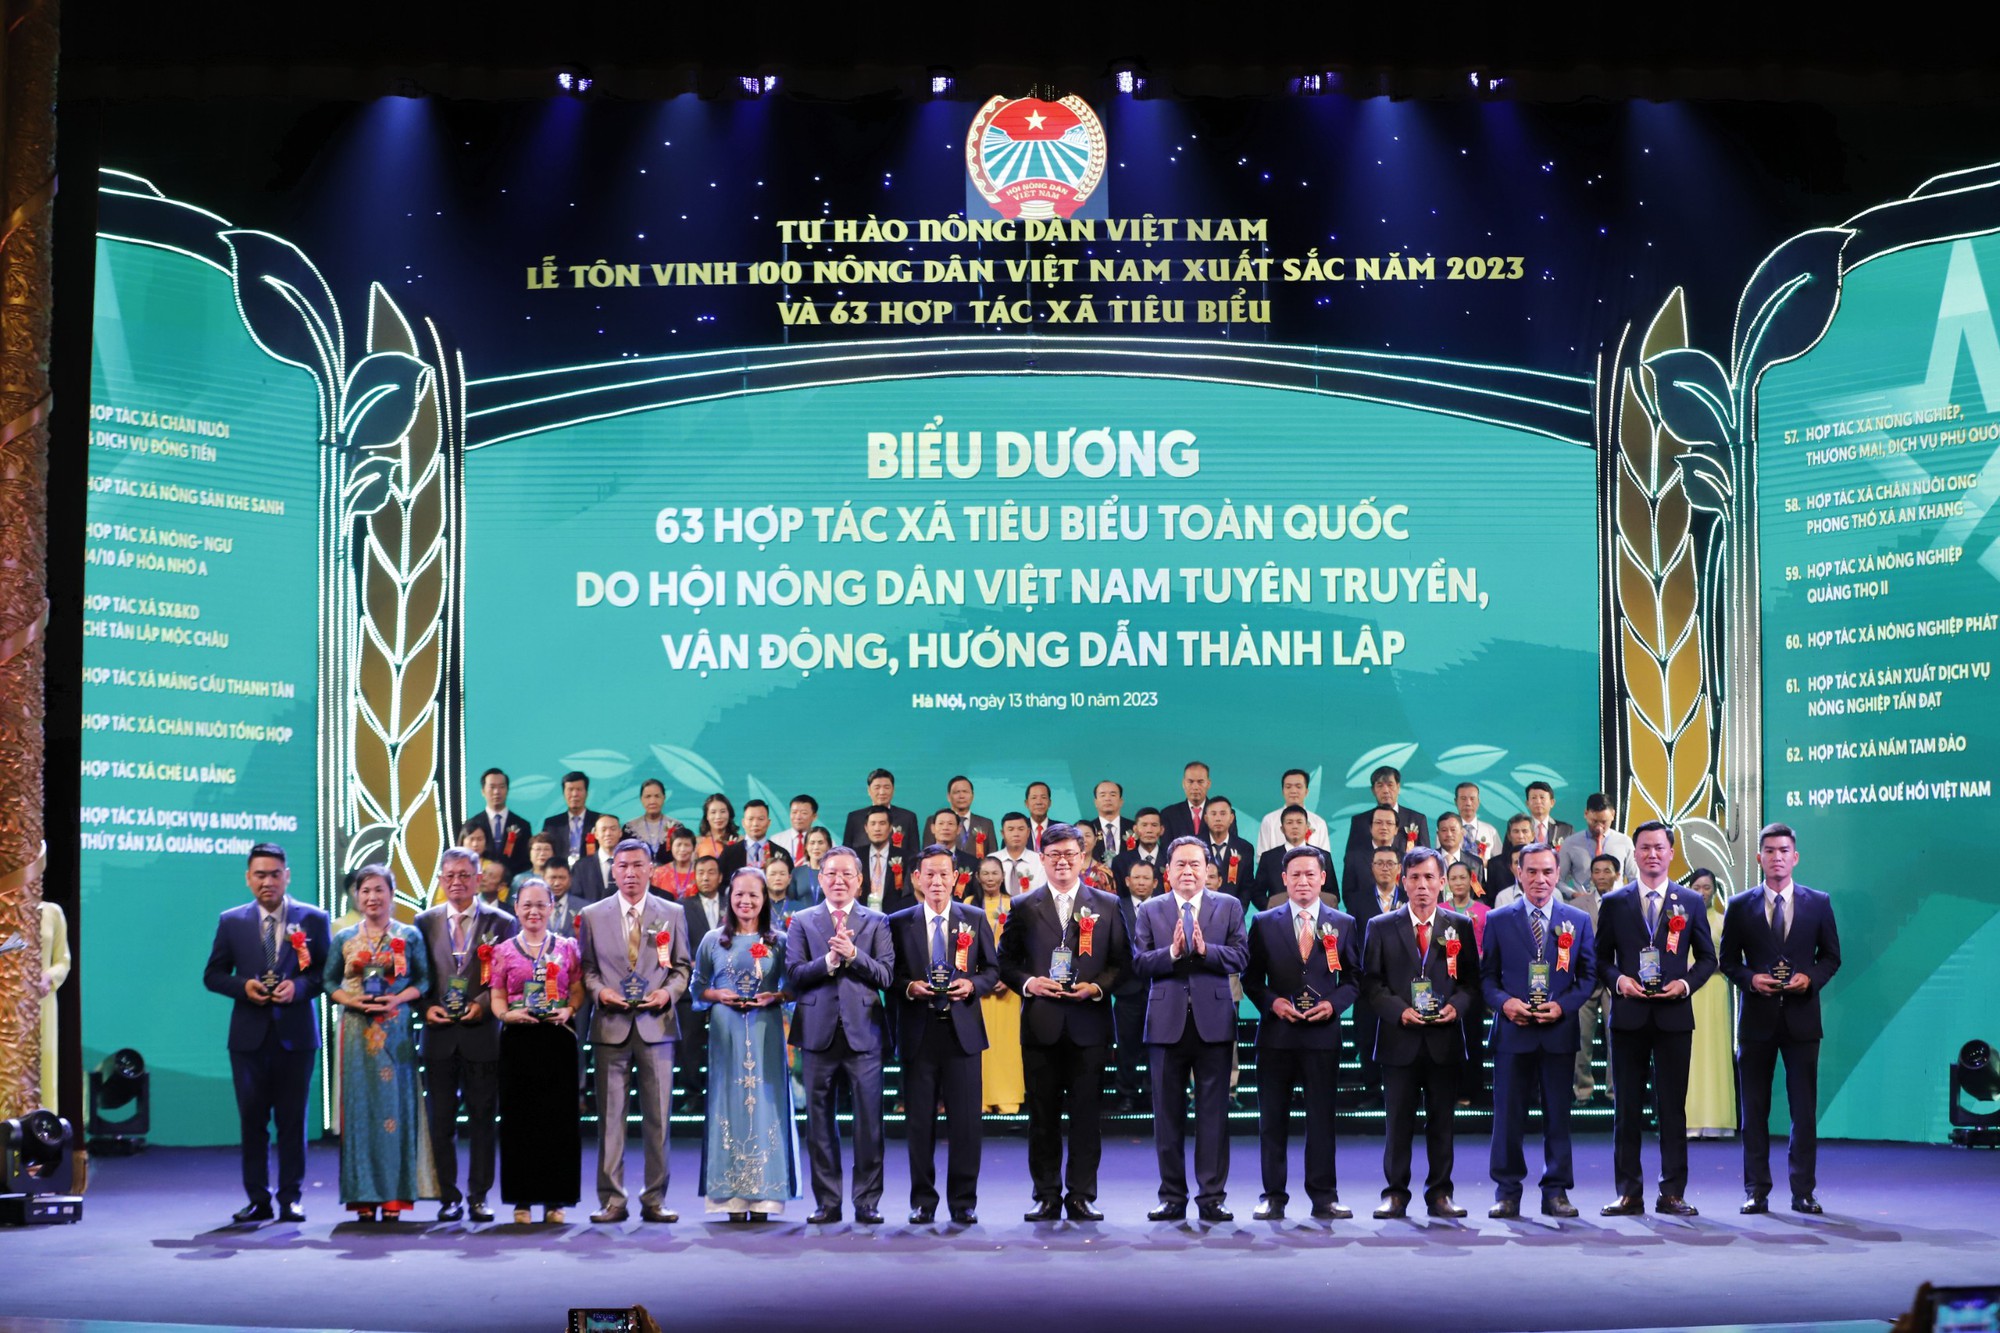 Bài phát biểu của Chủ tịch Hội NDVN Lương Quốc Đoàn tại Lễ tôn vinh Nông dân Việt Nam xuất sắc và HTX tiêu biểu - Ảnh 2.